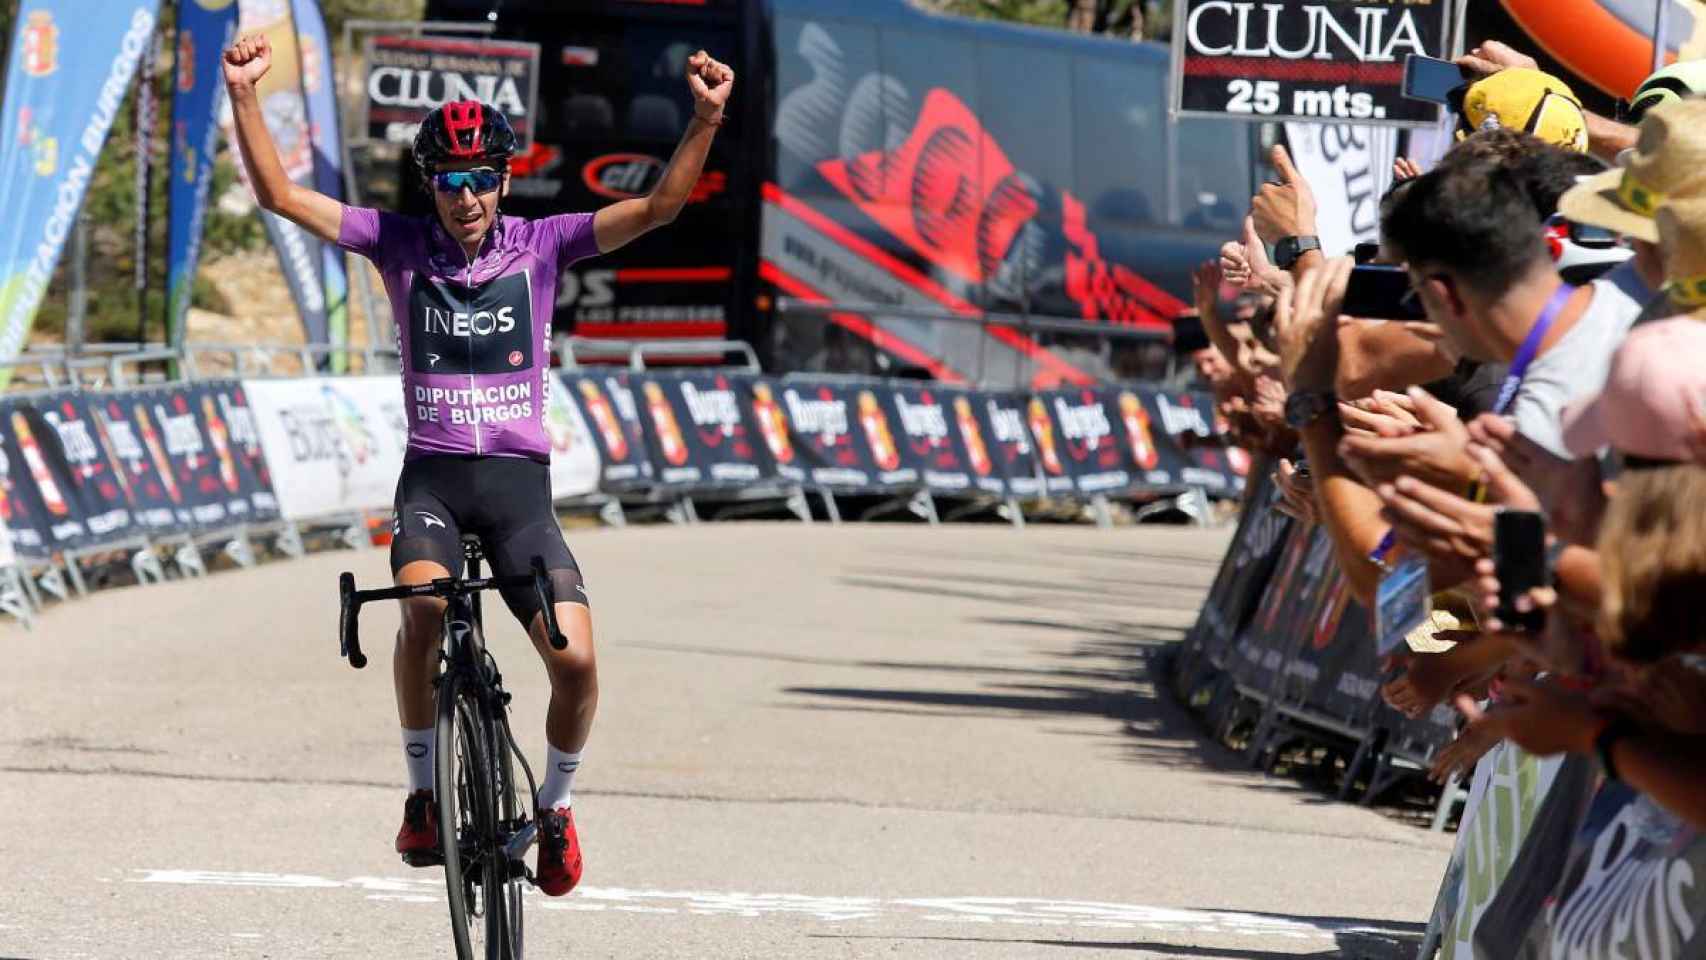 Iván Ramiro Sosa (INEOS) levanta los brazos celebrando su victoria en las Lagunas de Neila en la Vuelta a Burgos 2019